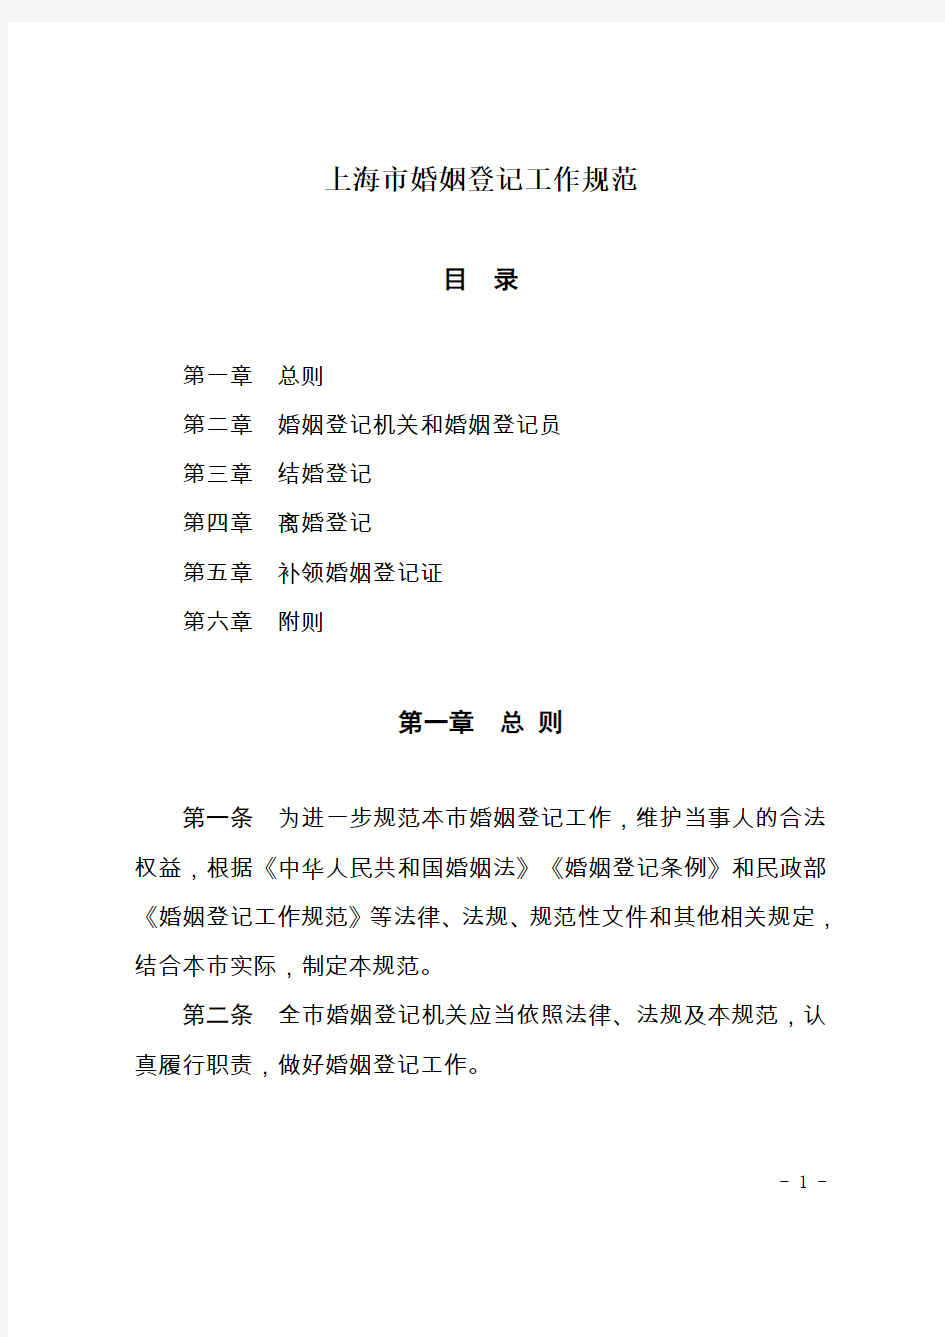 上海市婚姻登记工作规范